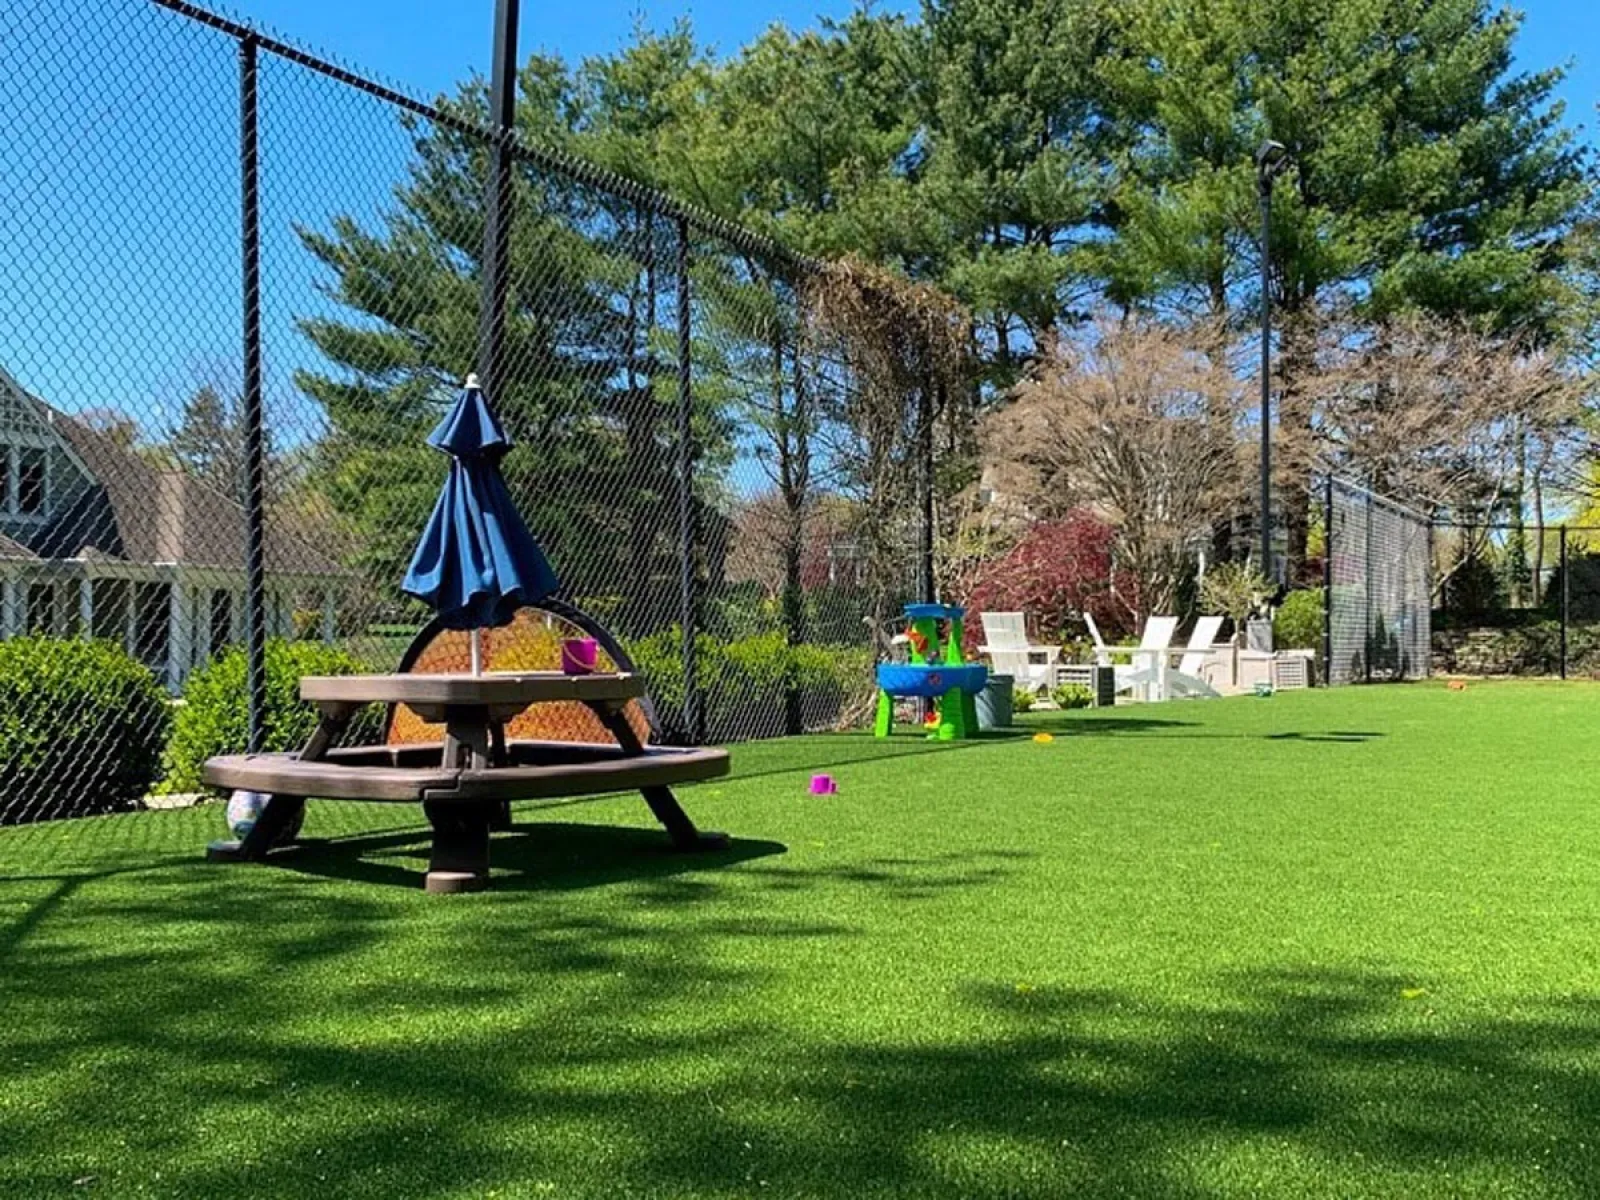 a swing set in a yard